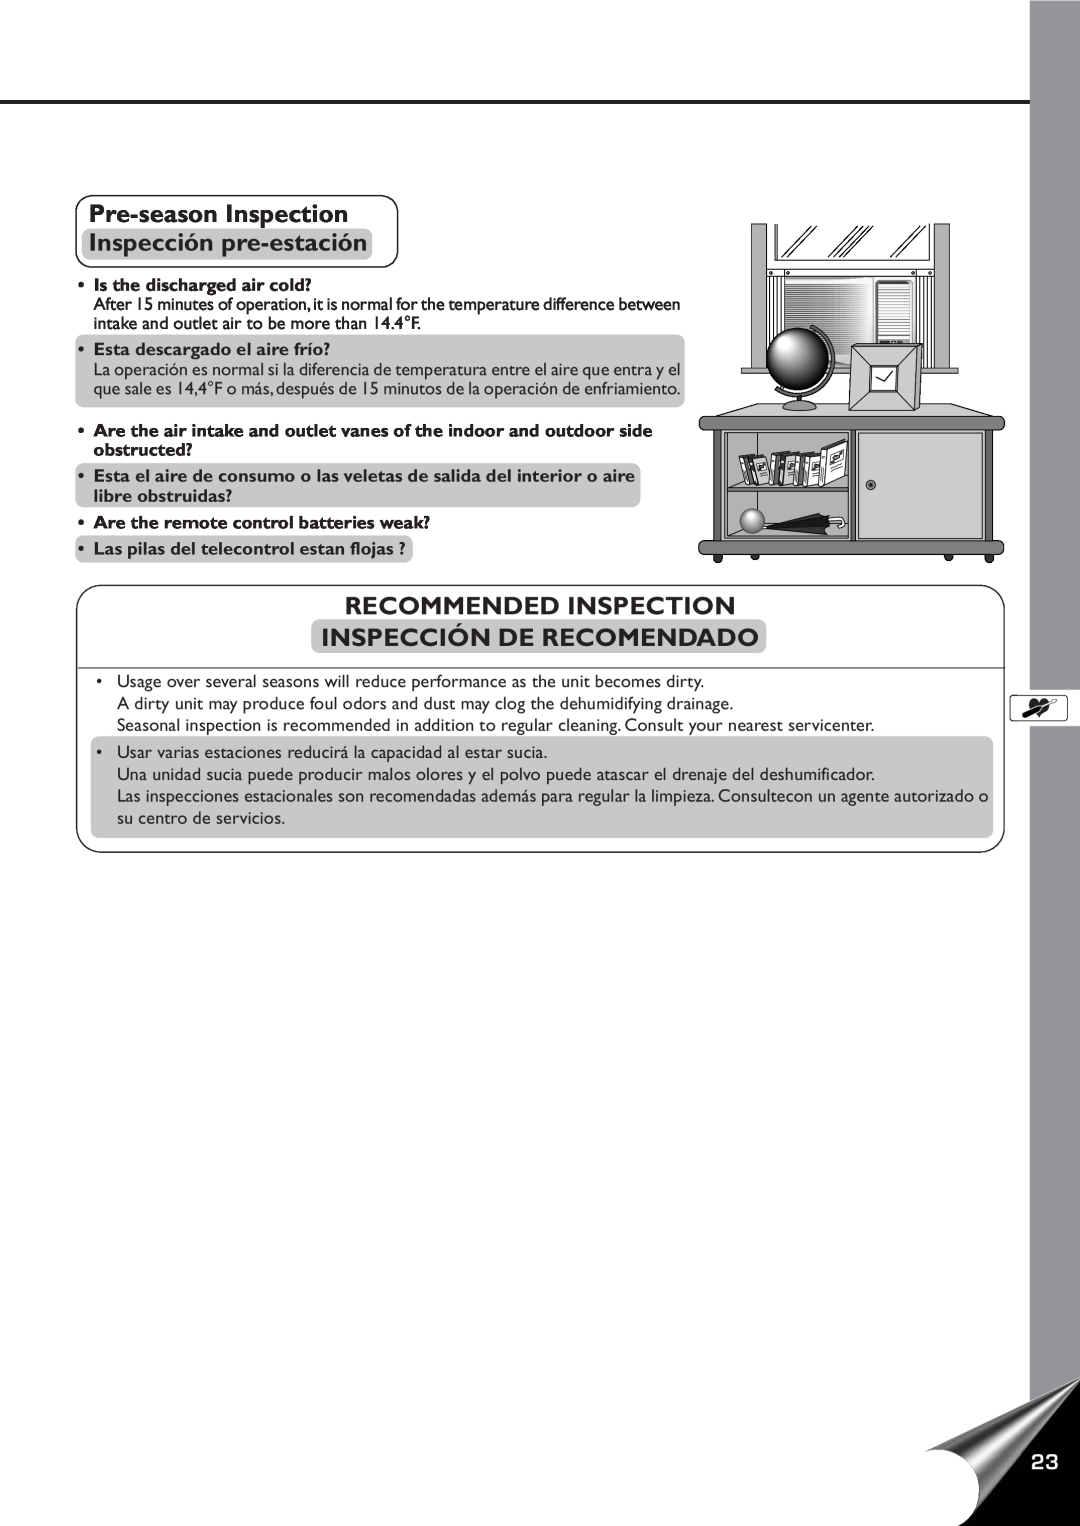 Panasonic CW-XC80YU manual Pre-seasonInspection Inspección pre-estación, Recommended Inspection Inspección De Recomendado 